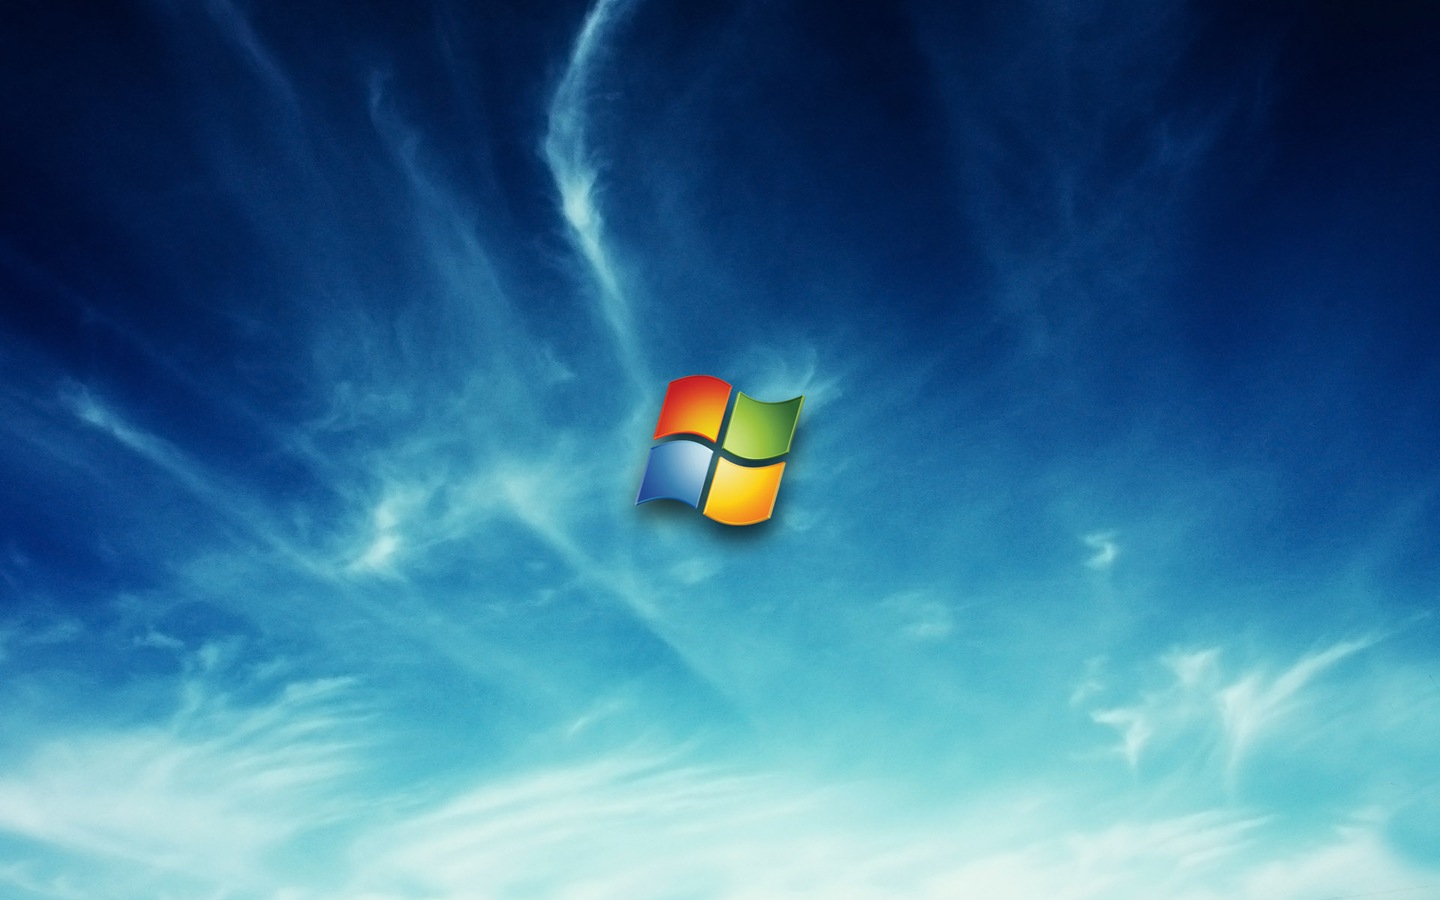 Windows Seven Abstract Cg Wallpaper No Desktop